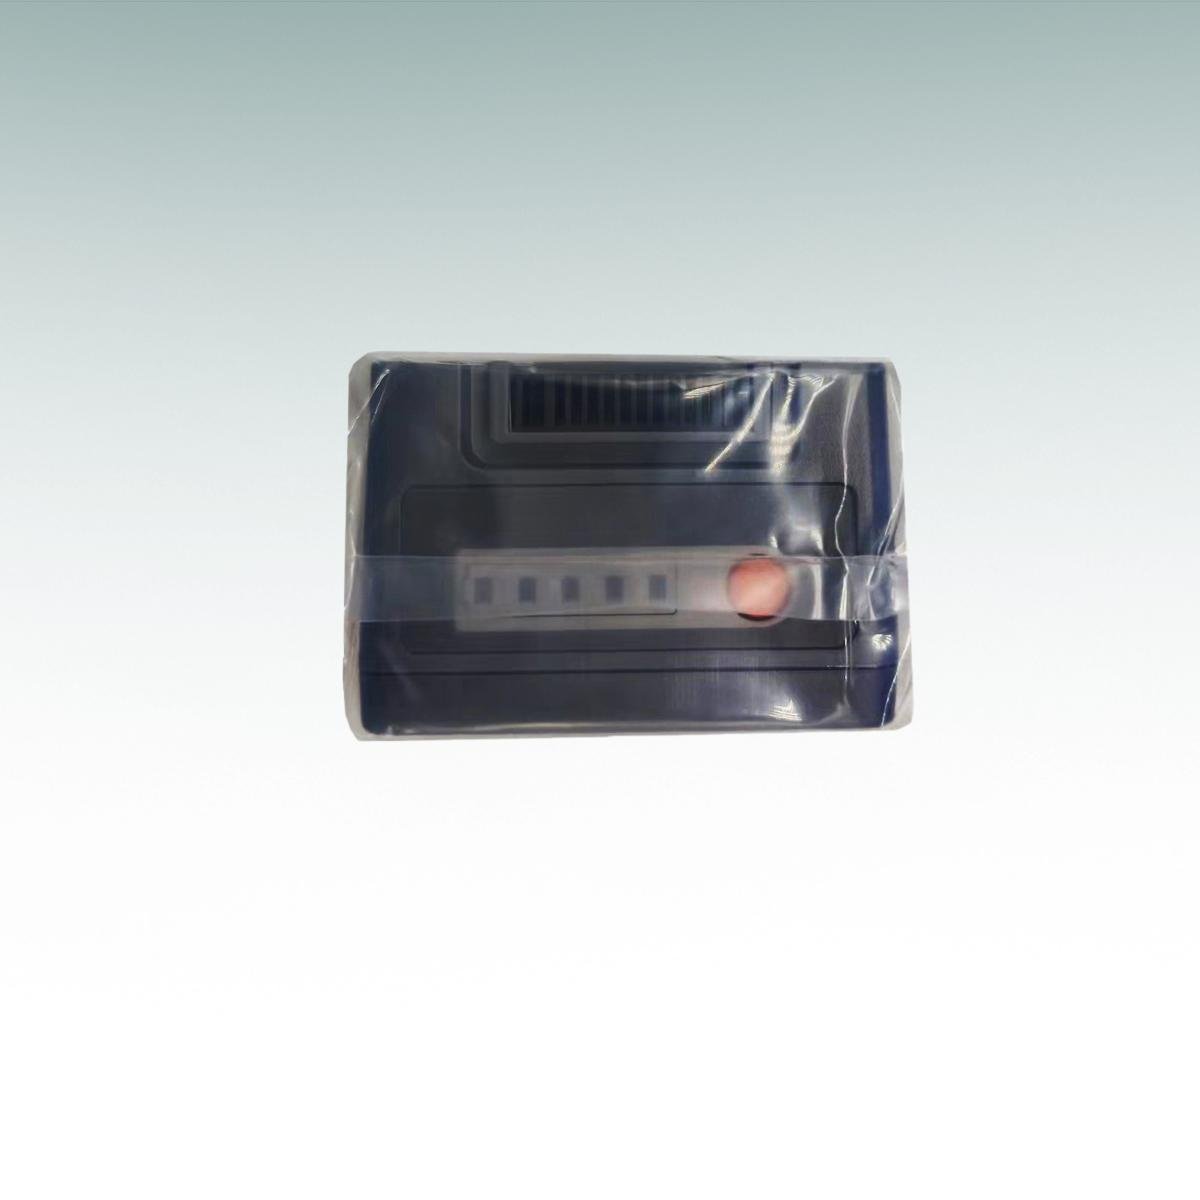 科曼自動除顫儀可充電鋰電池CMLI3X4I001B 3